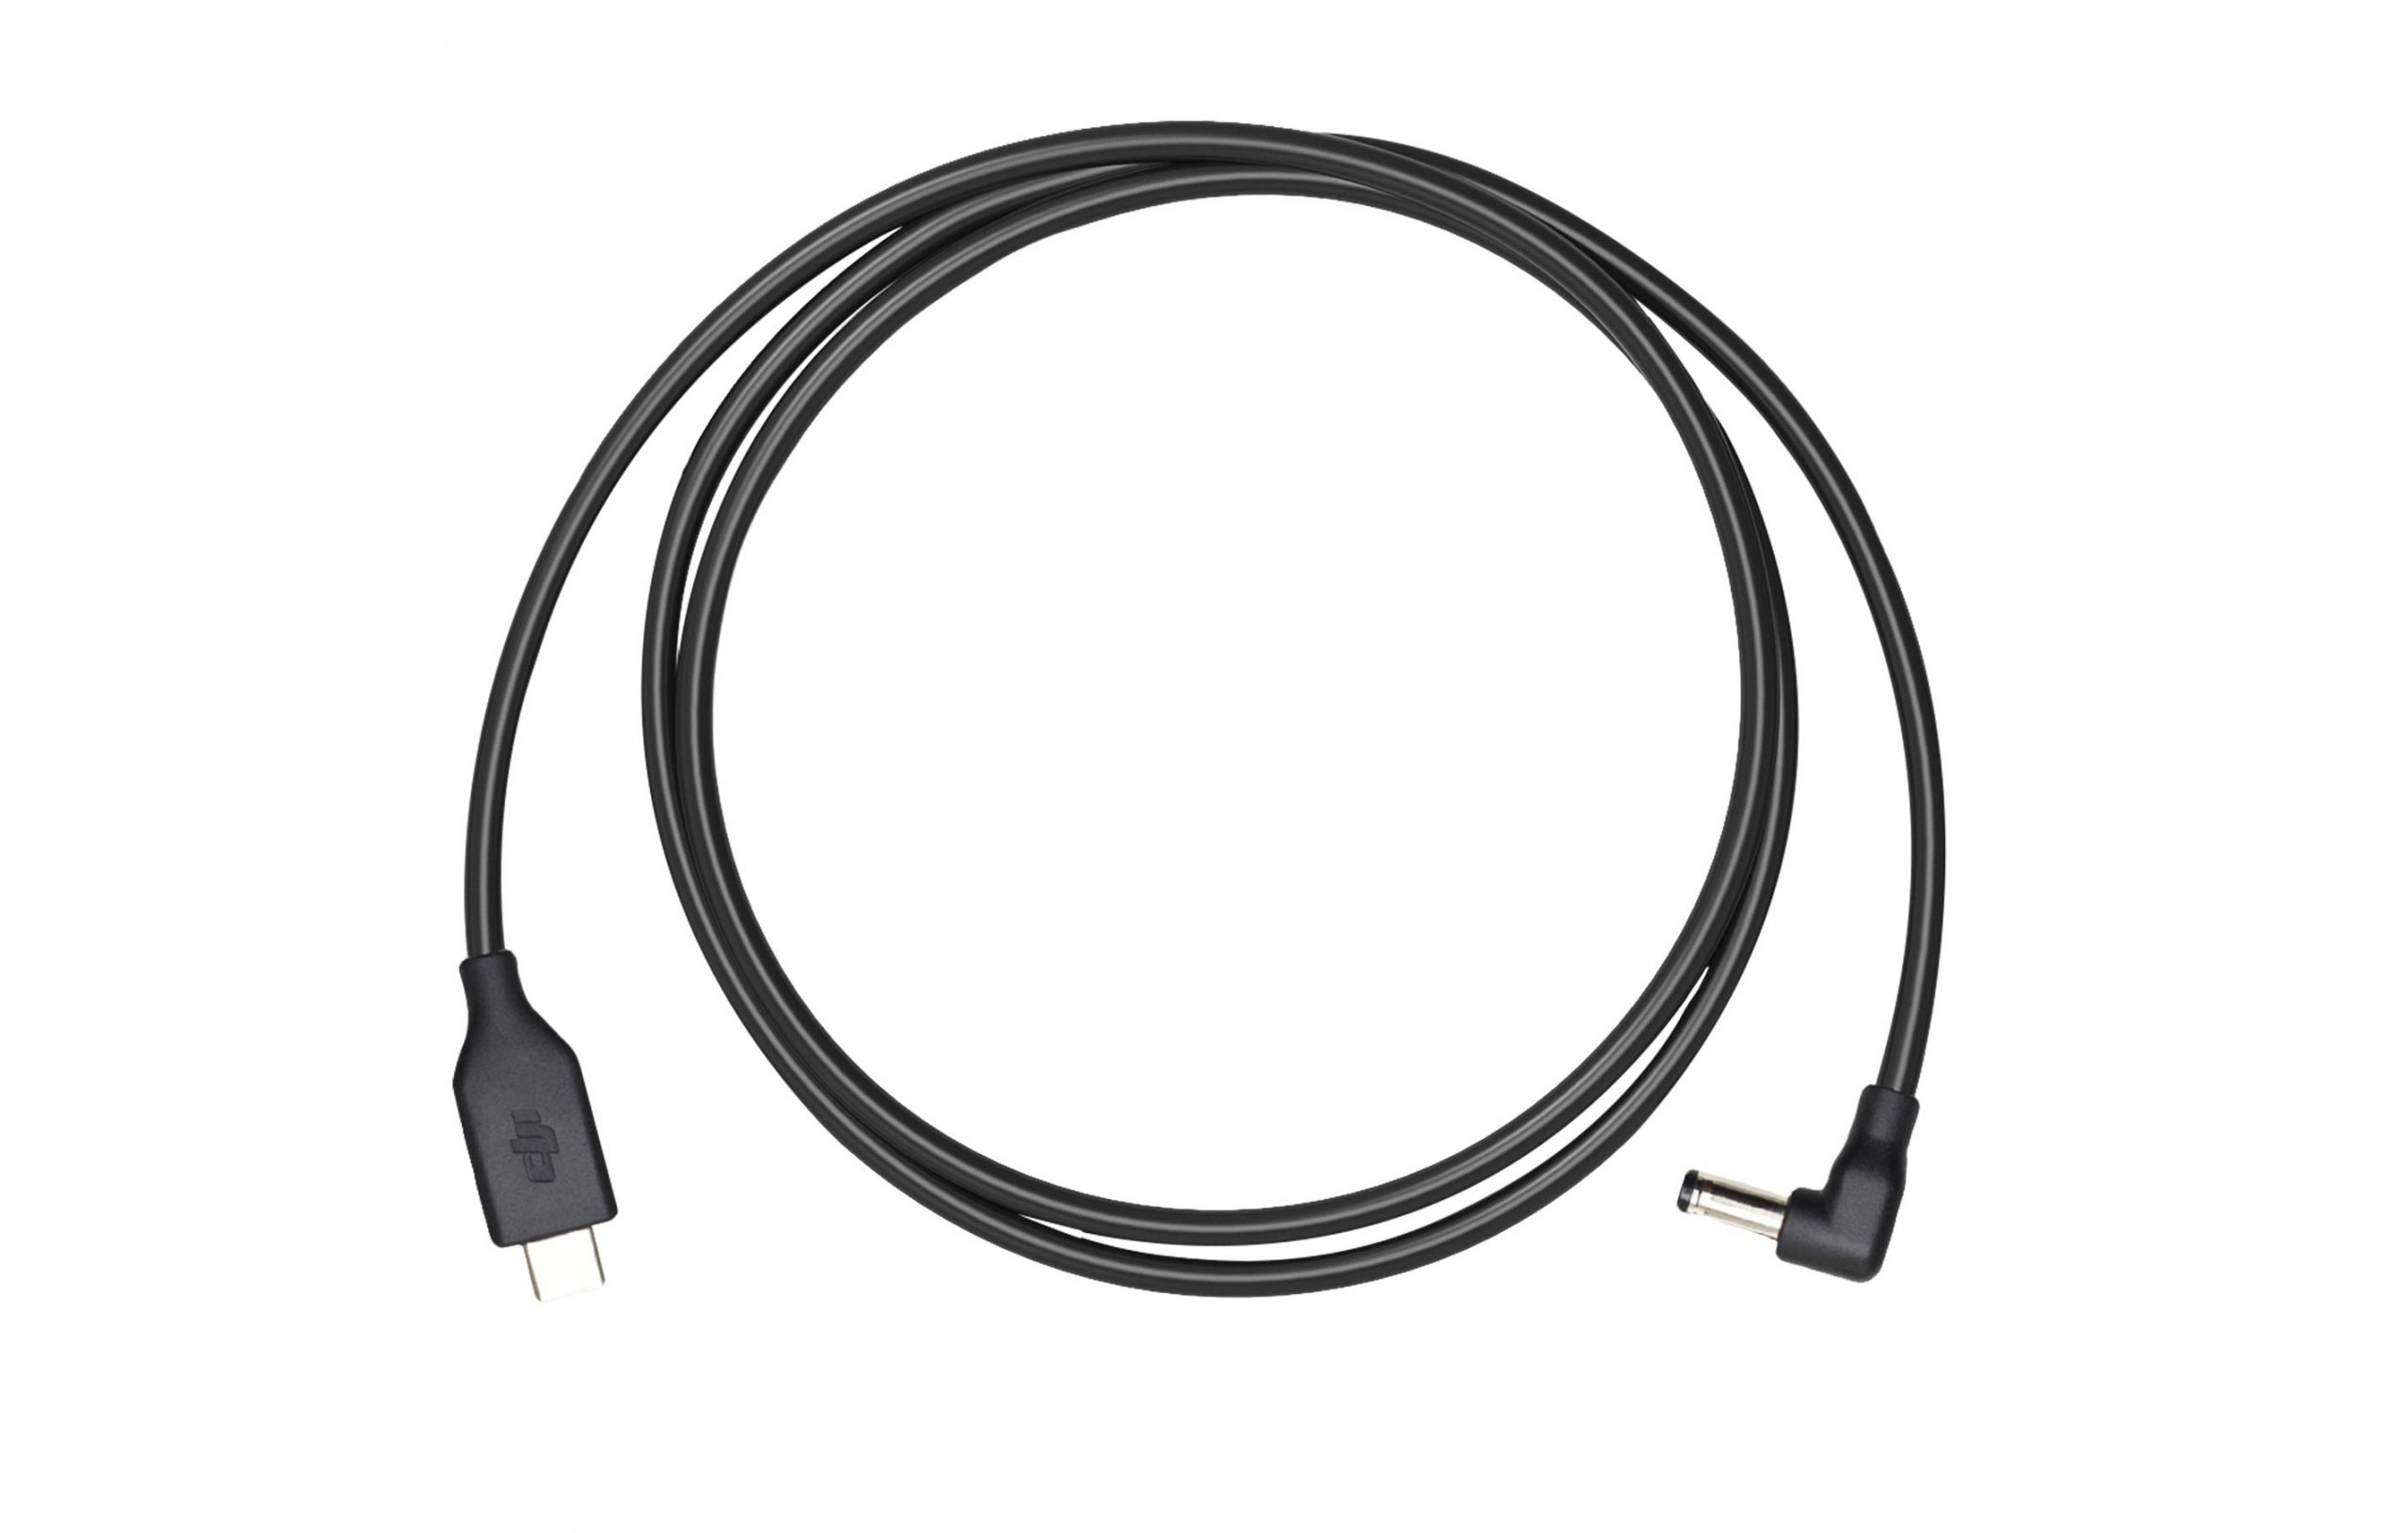 DJI FPV Goggles Power Cable là dây cáp sạc từ cổng USB Type-C sang DC